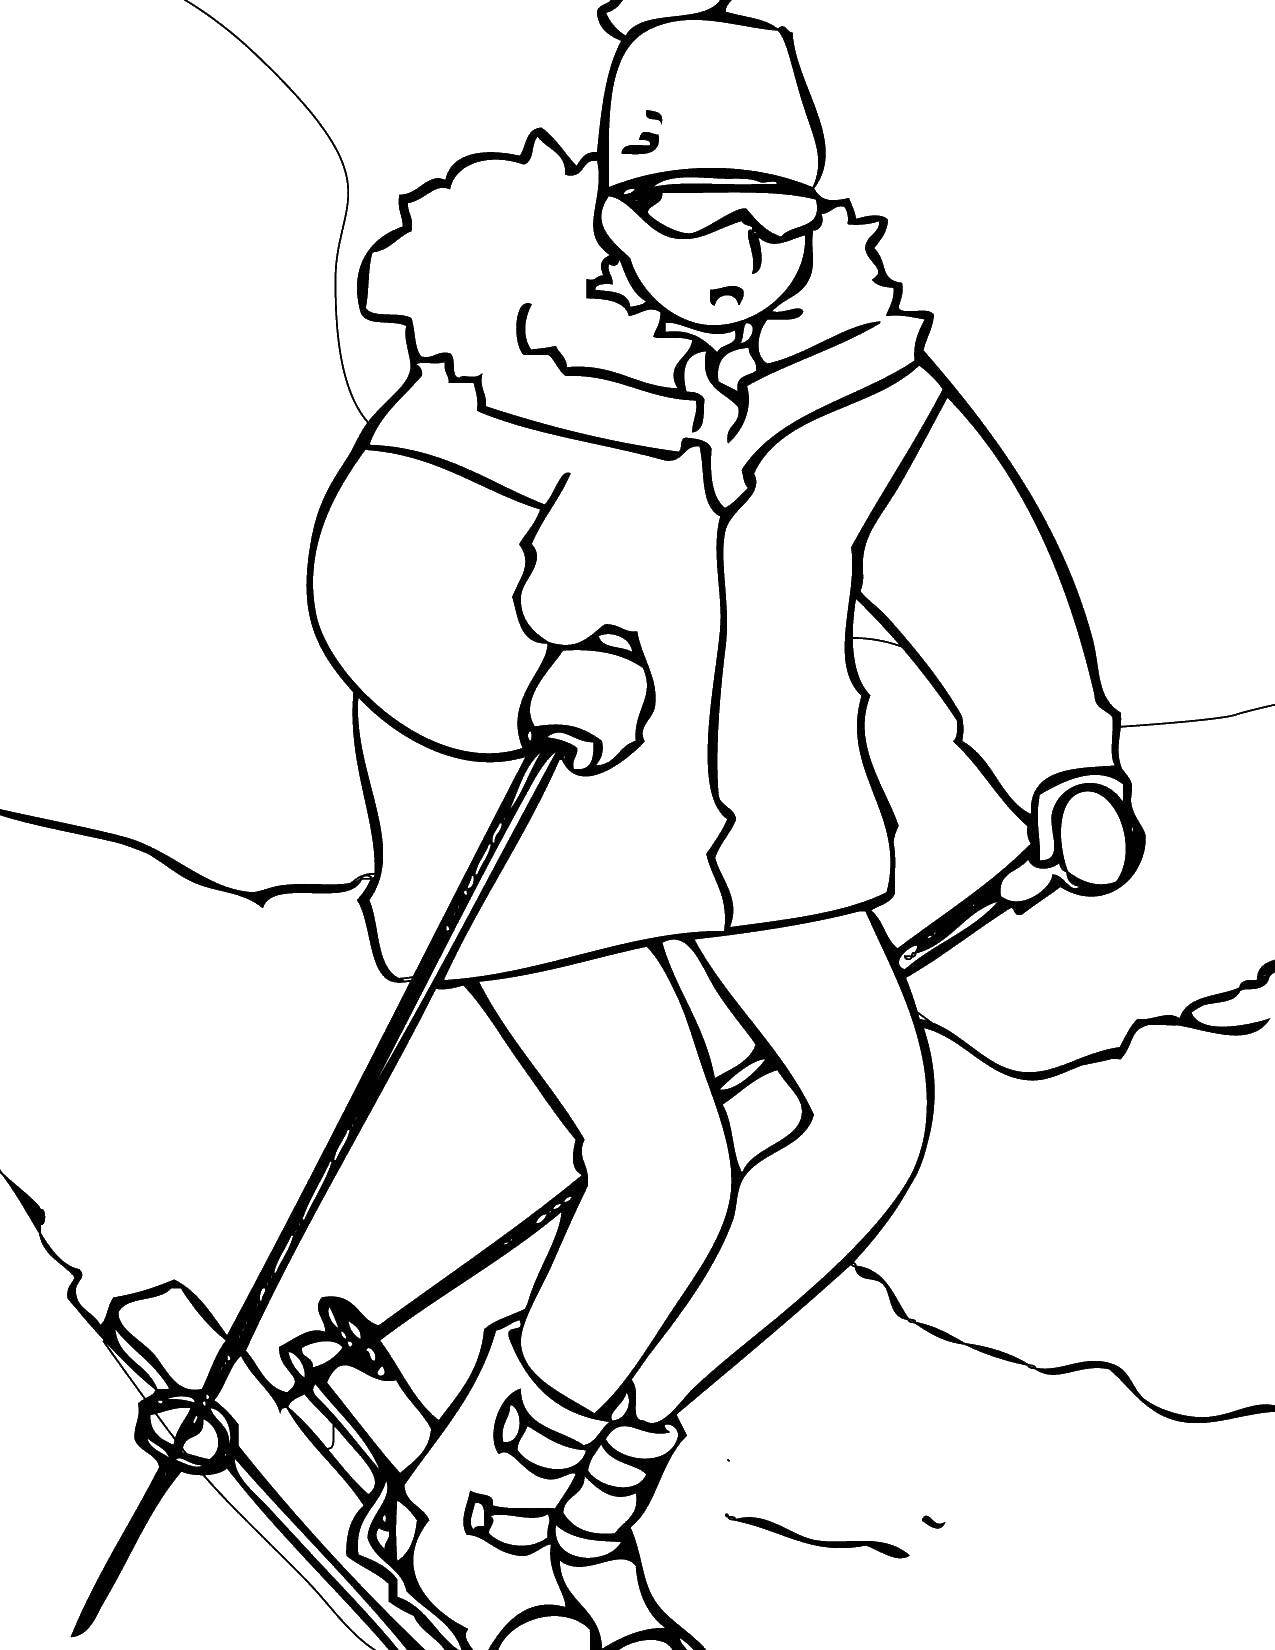 Название: Раскраска Лыжник катается на лыжах. Категория: Спорт. Теги: Спорт, лыжи.